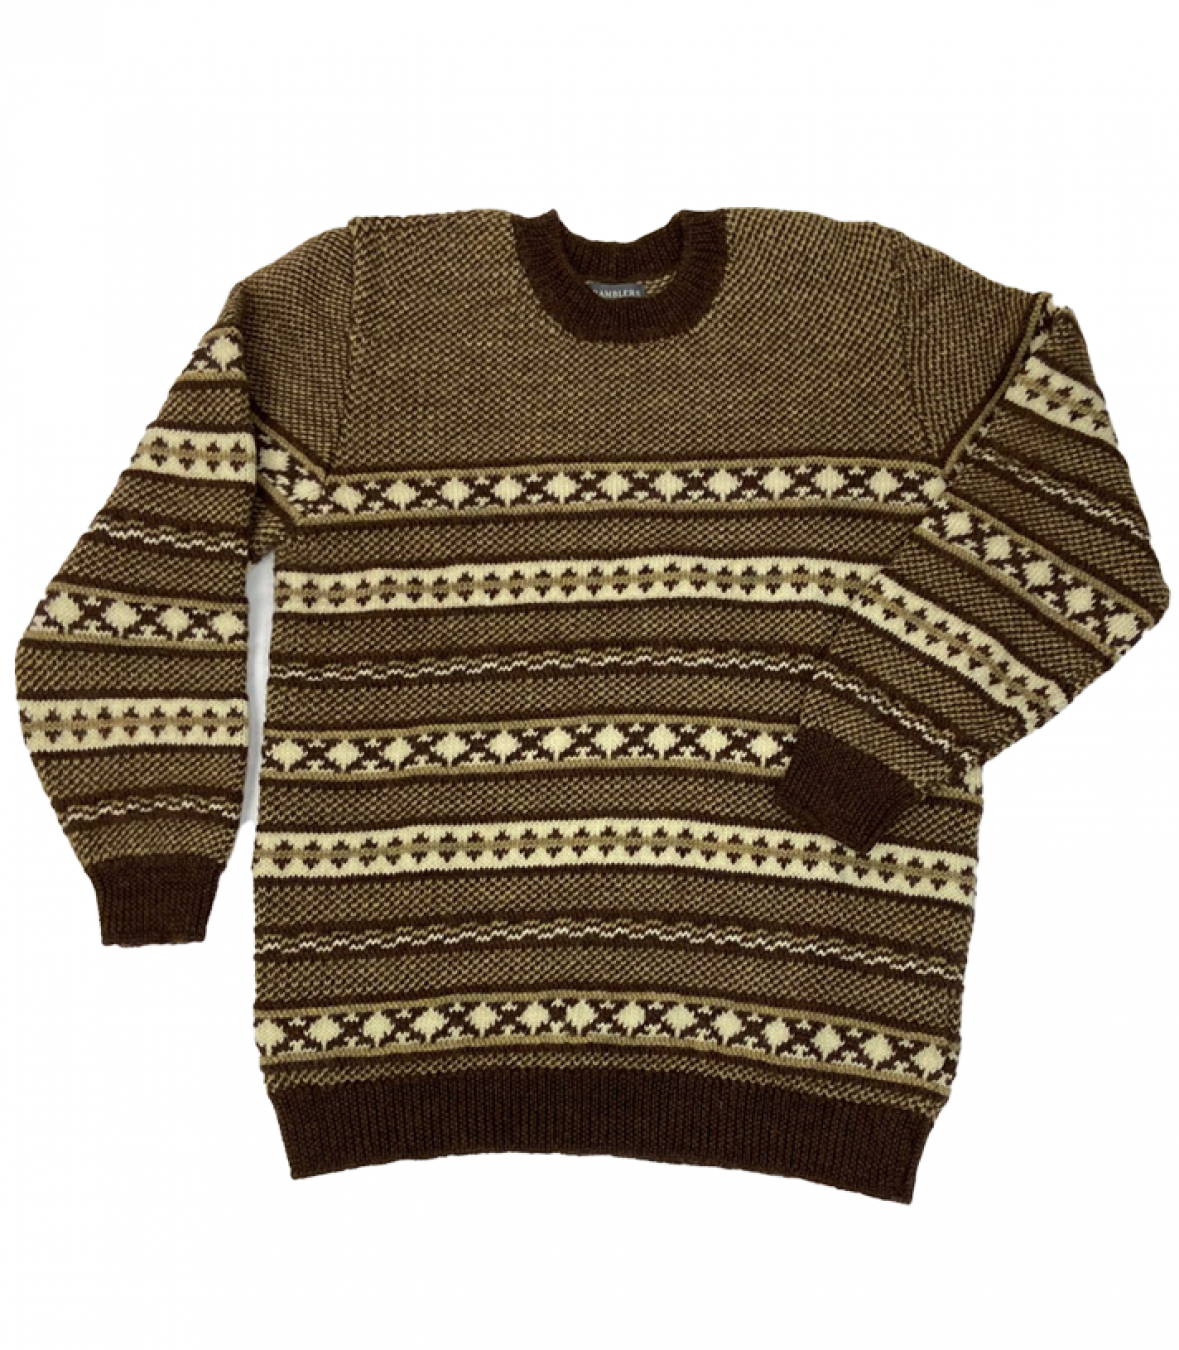 Jacquard Crew Neck Wool Sweater Made in USA | RAMBLERS WAY